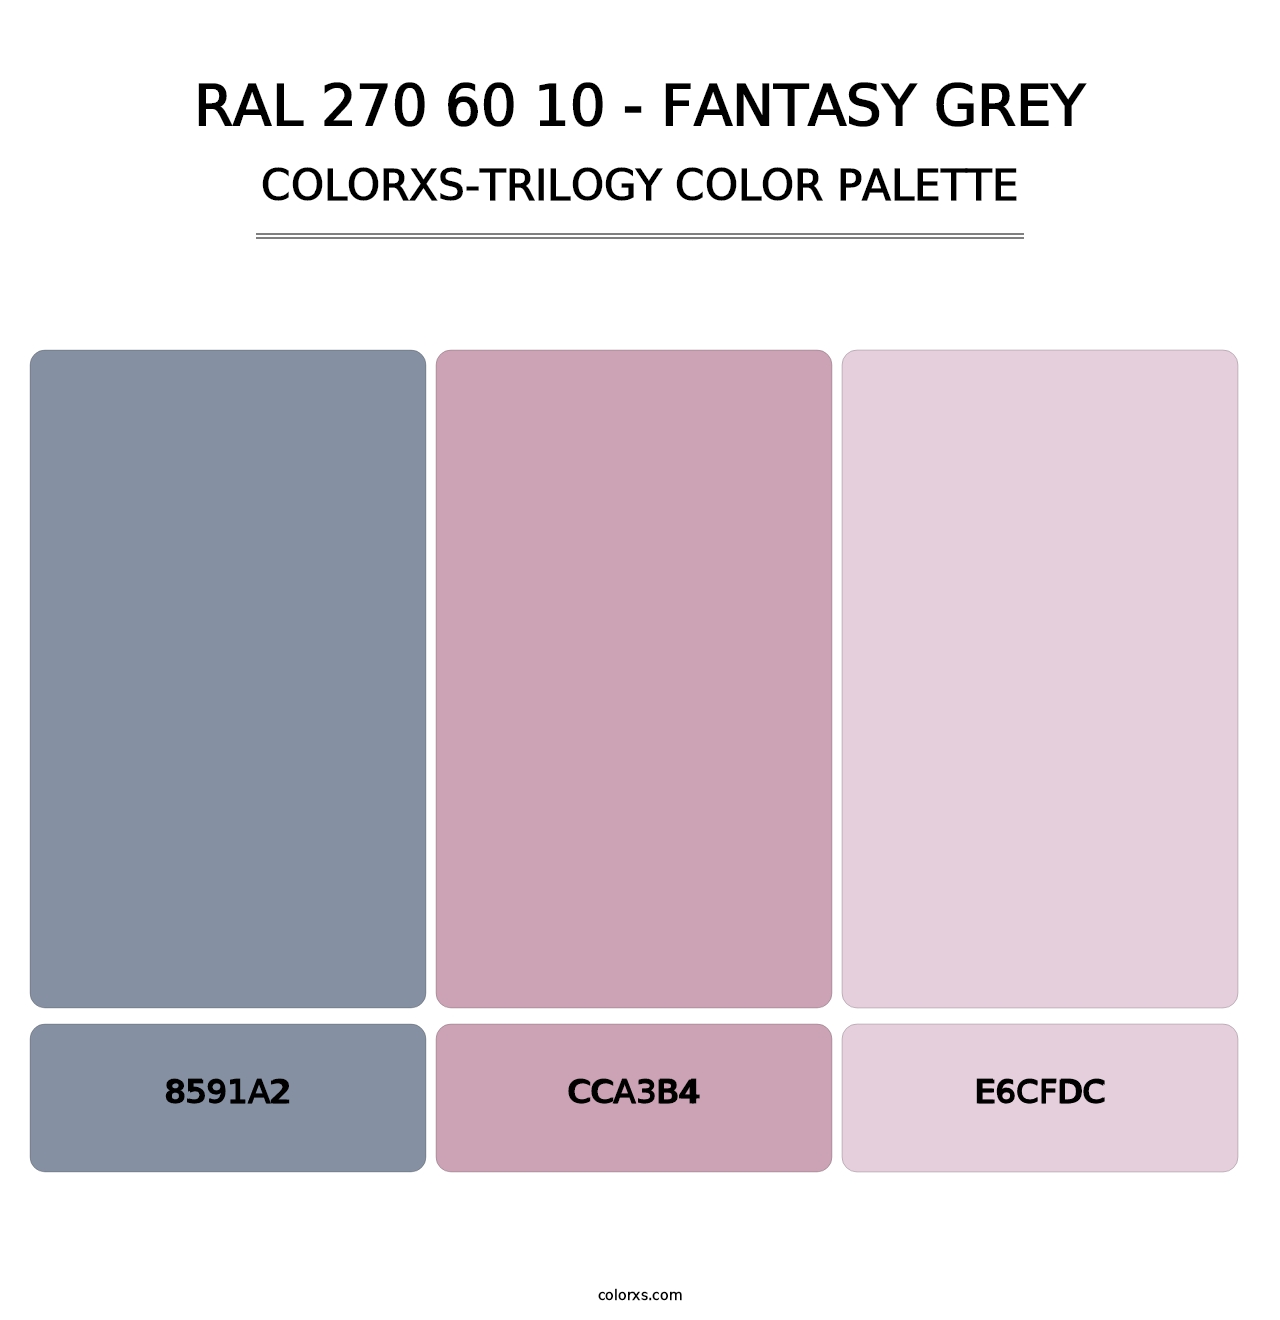 RAL 270 60 10 - Fantasy Grey - Colorxs Trilogy Palette